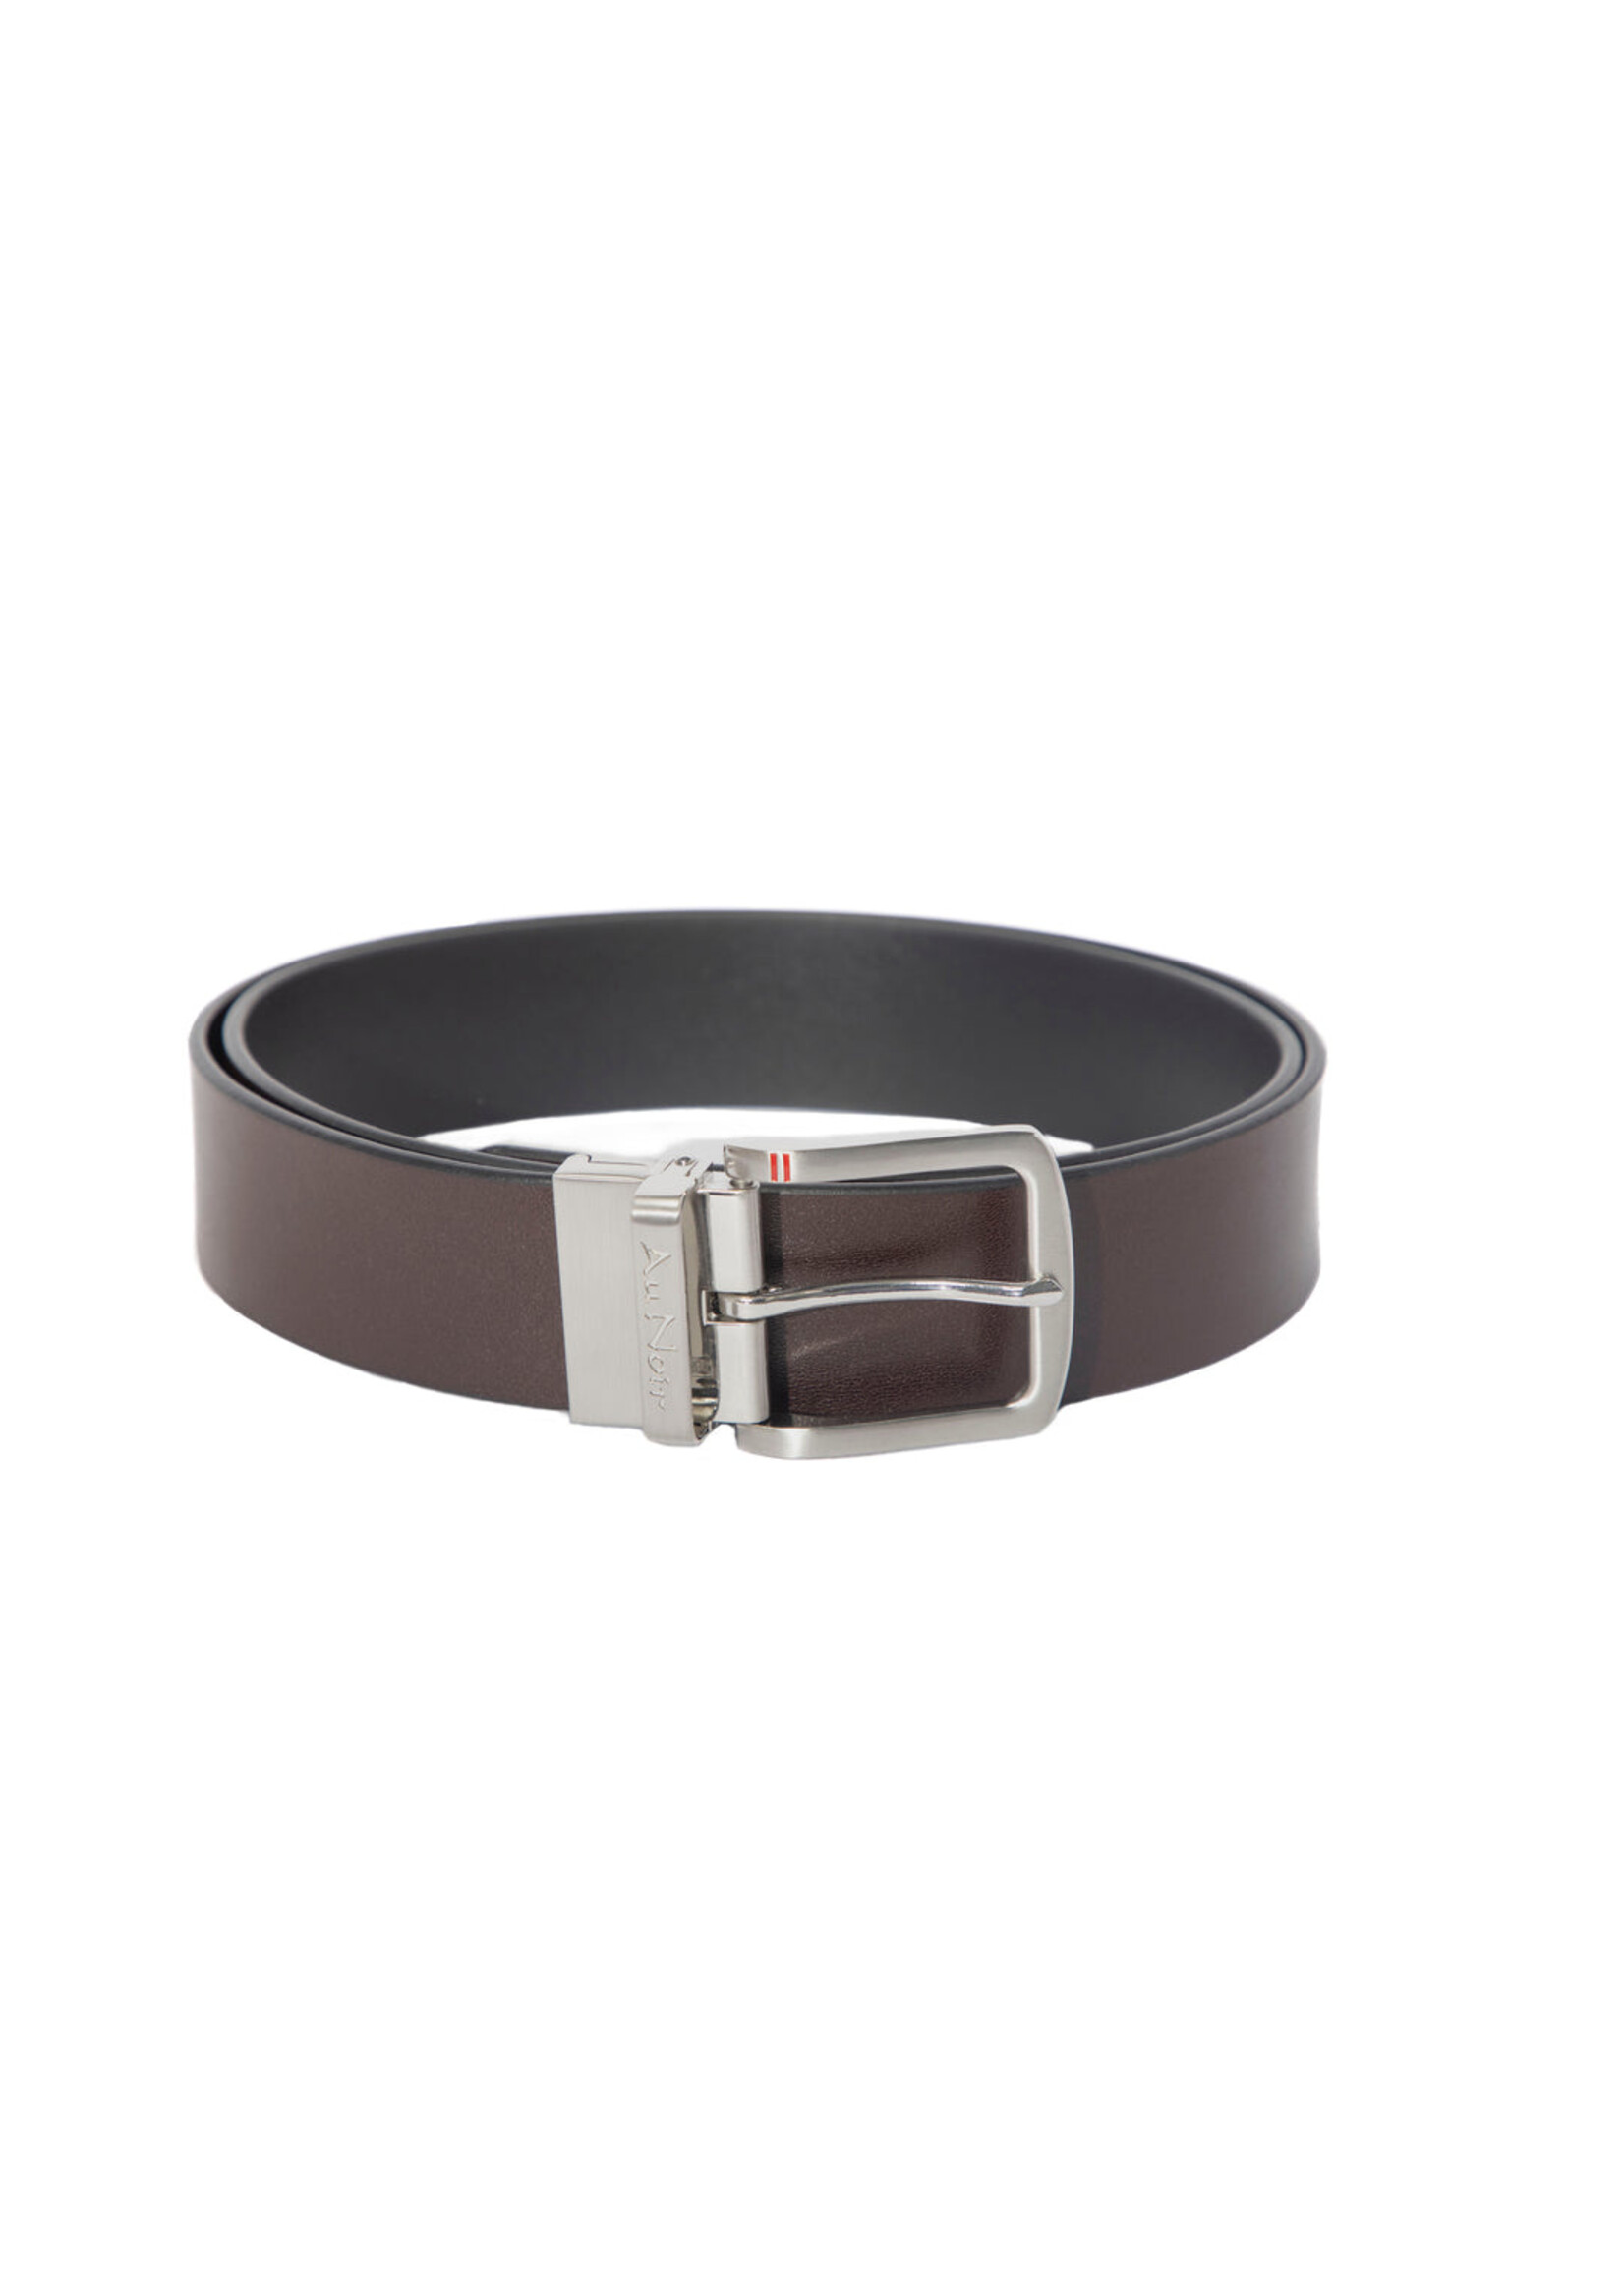 AU NOIR Men's reversible leather belt